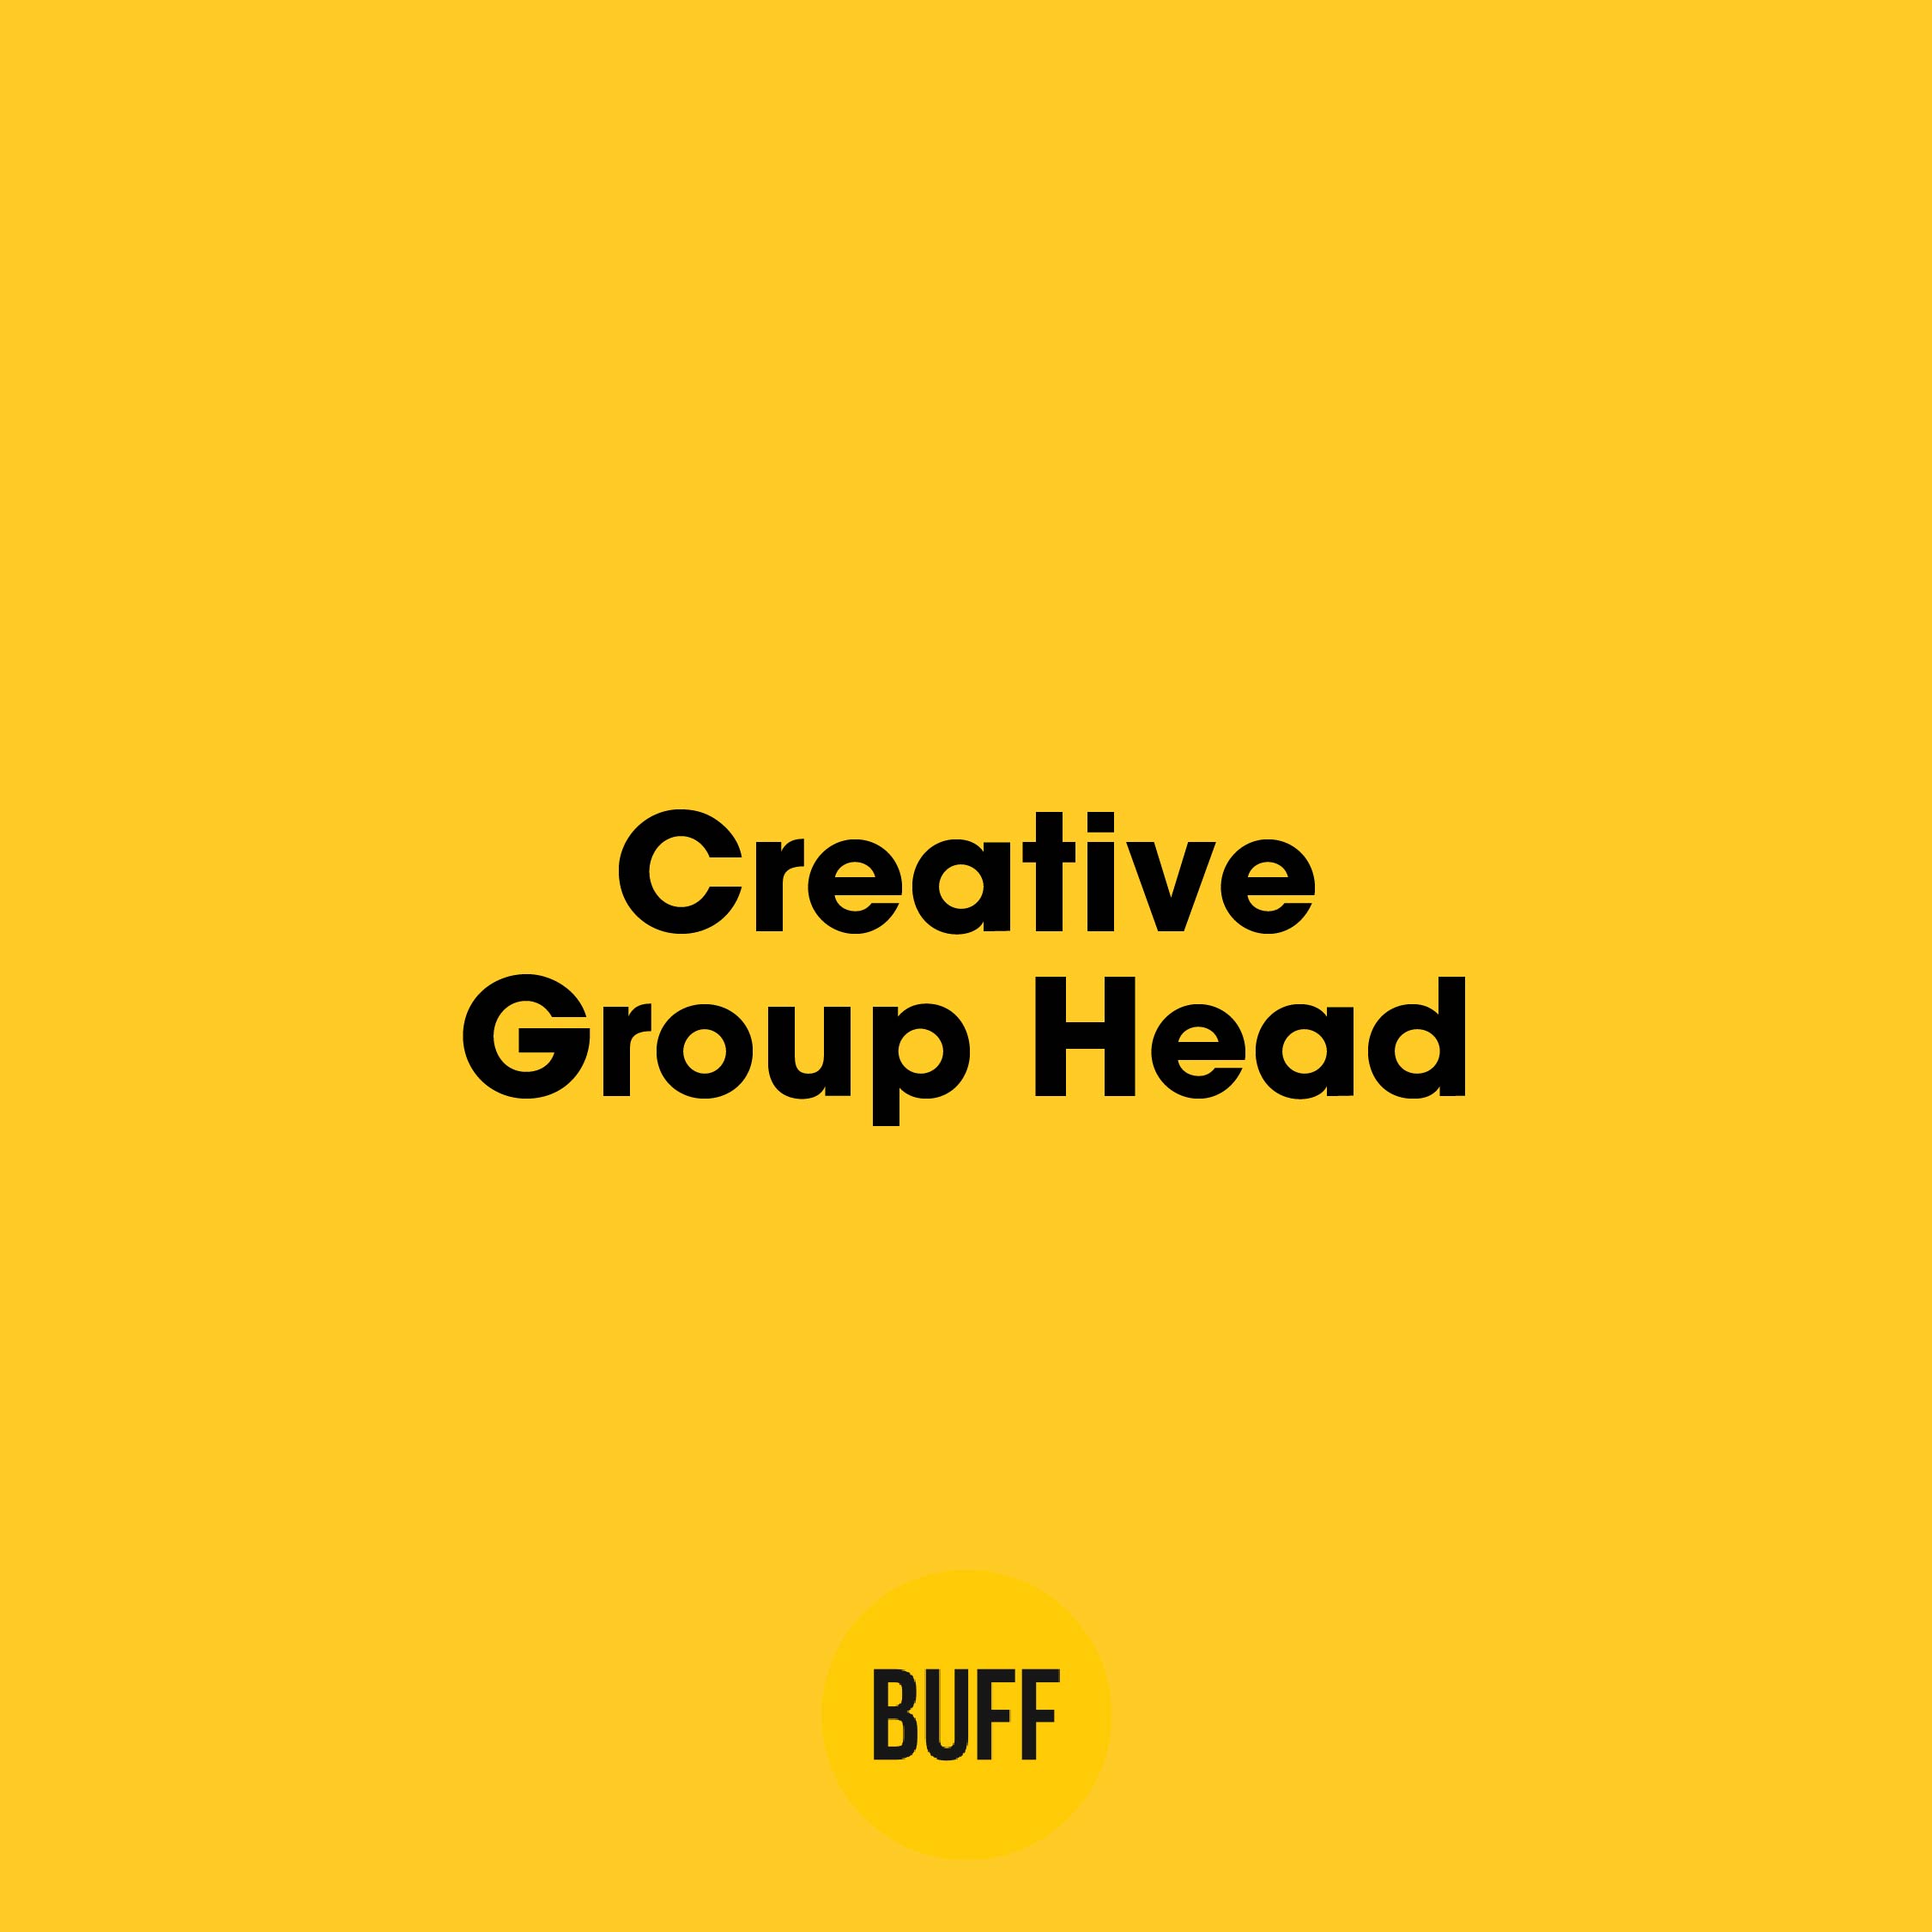 Buff Agency, Creative Group Head arıyor! 😇